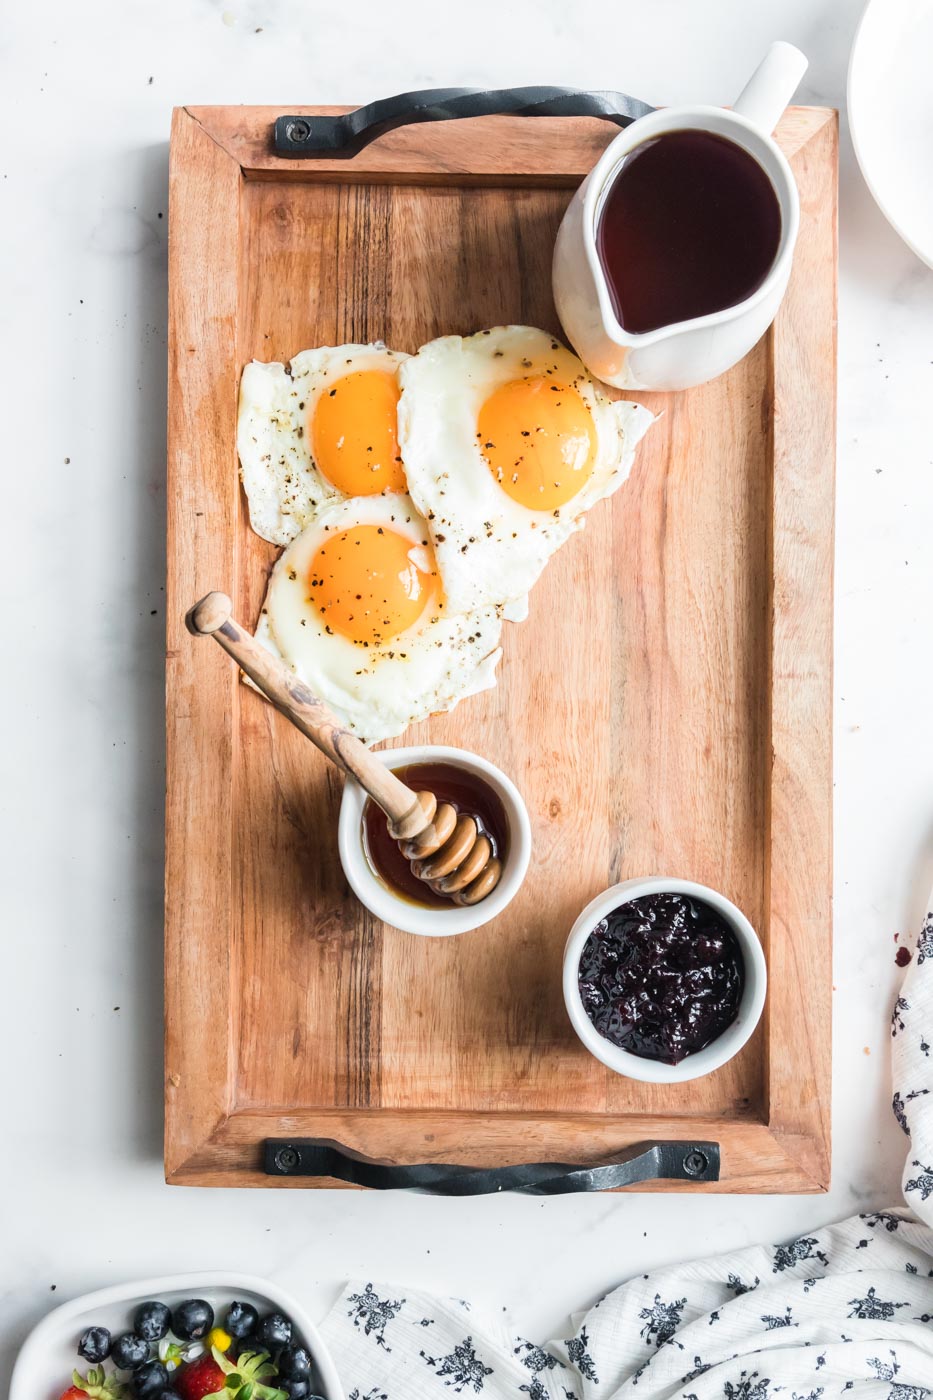 eggs sunny side up arranged on breakfast charcuterie board